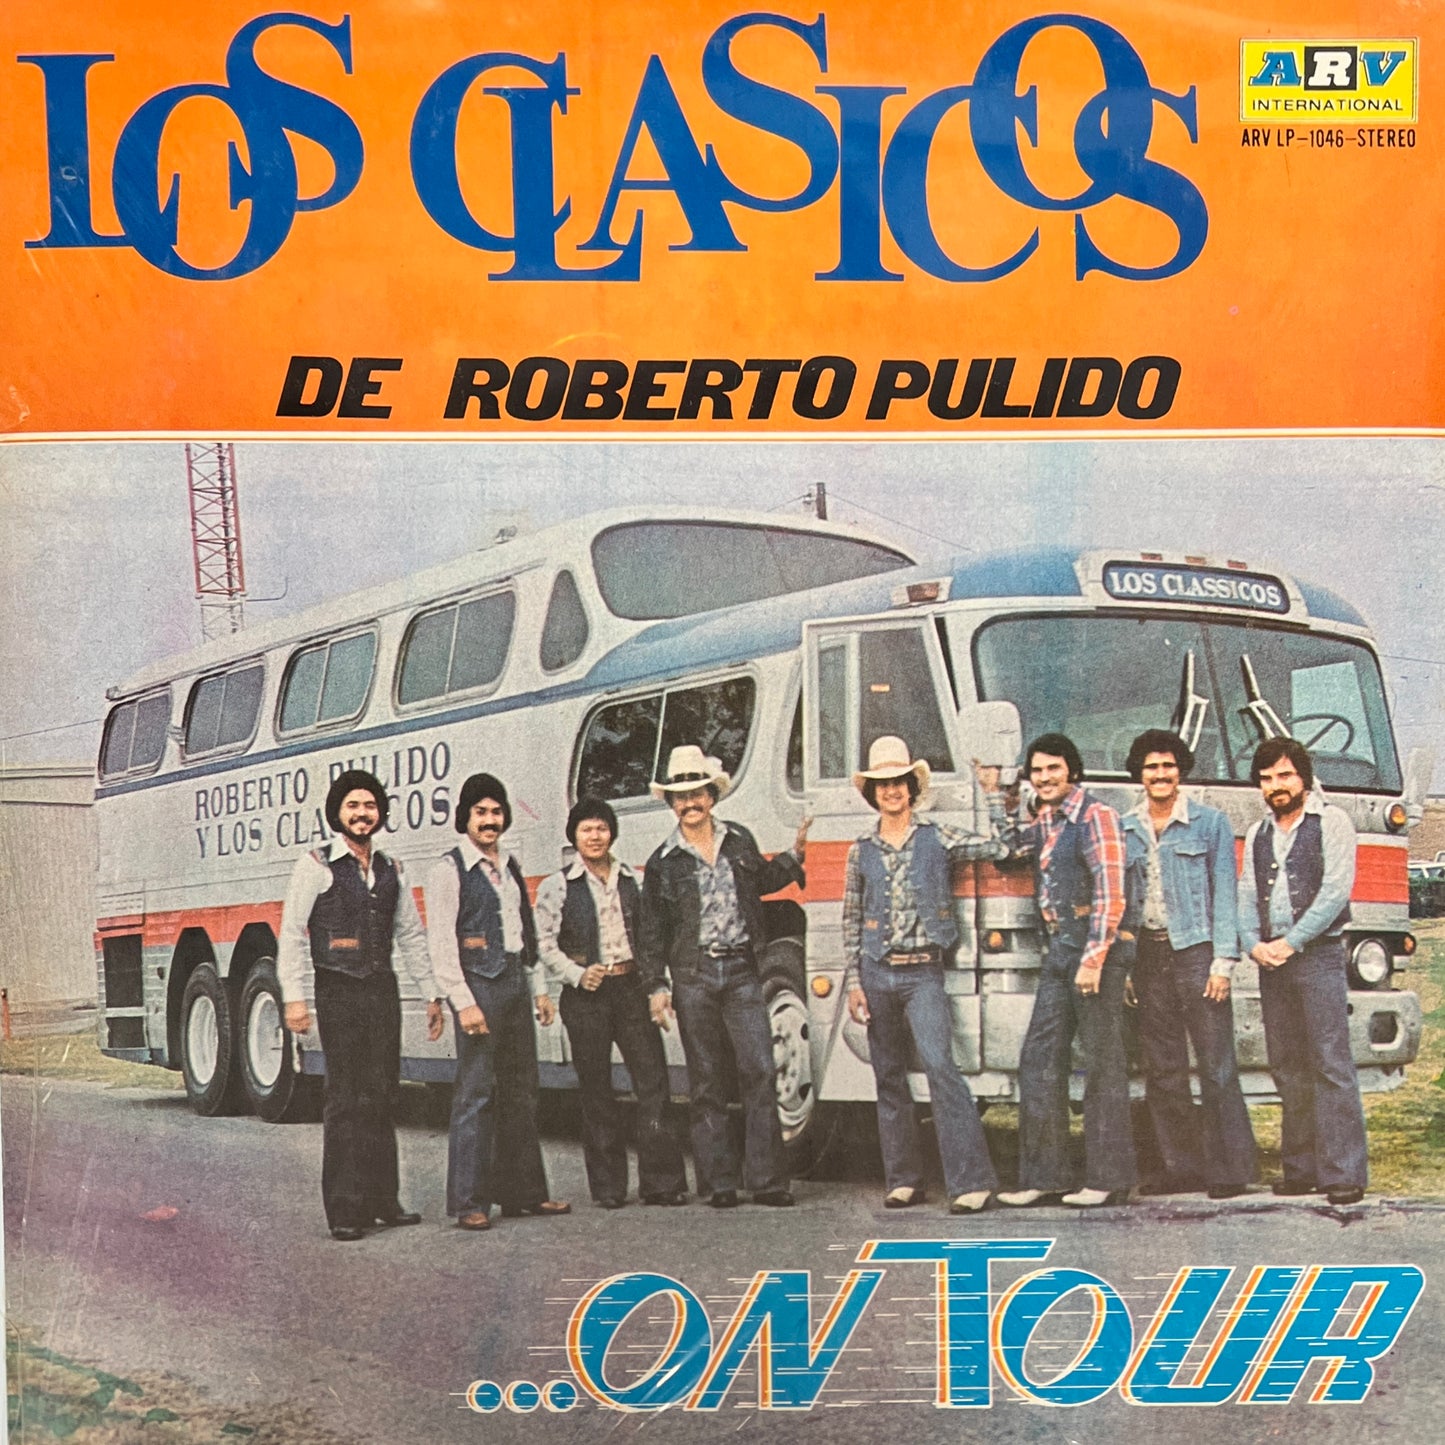 Roberto Pulido Y Los Clasicos - On Tour (Vinyl)